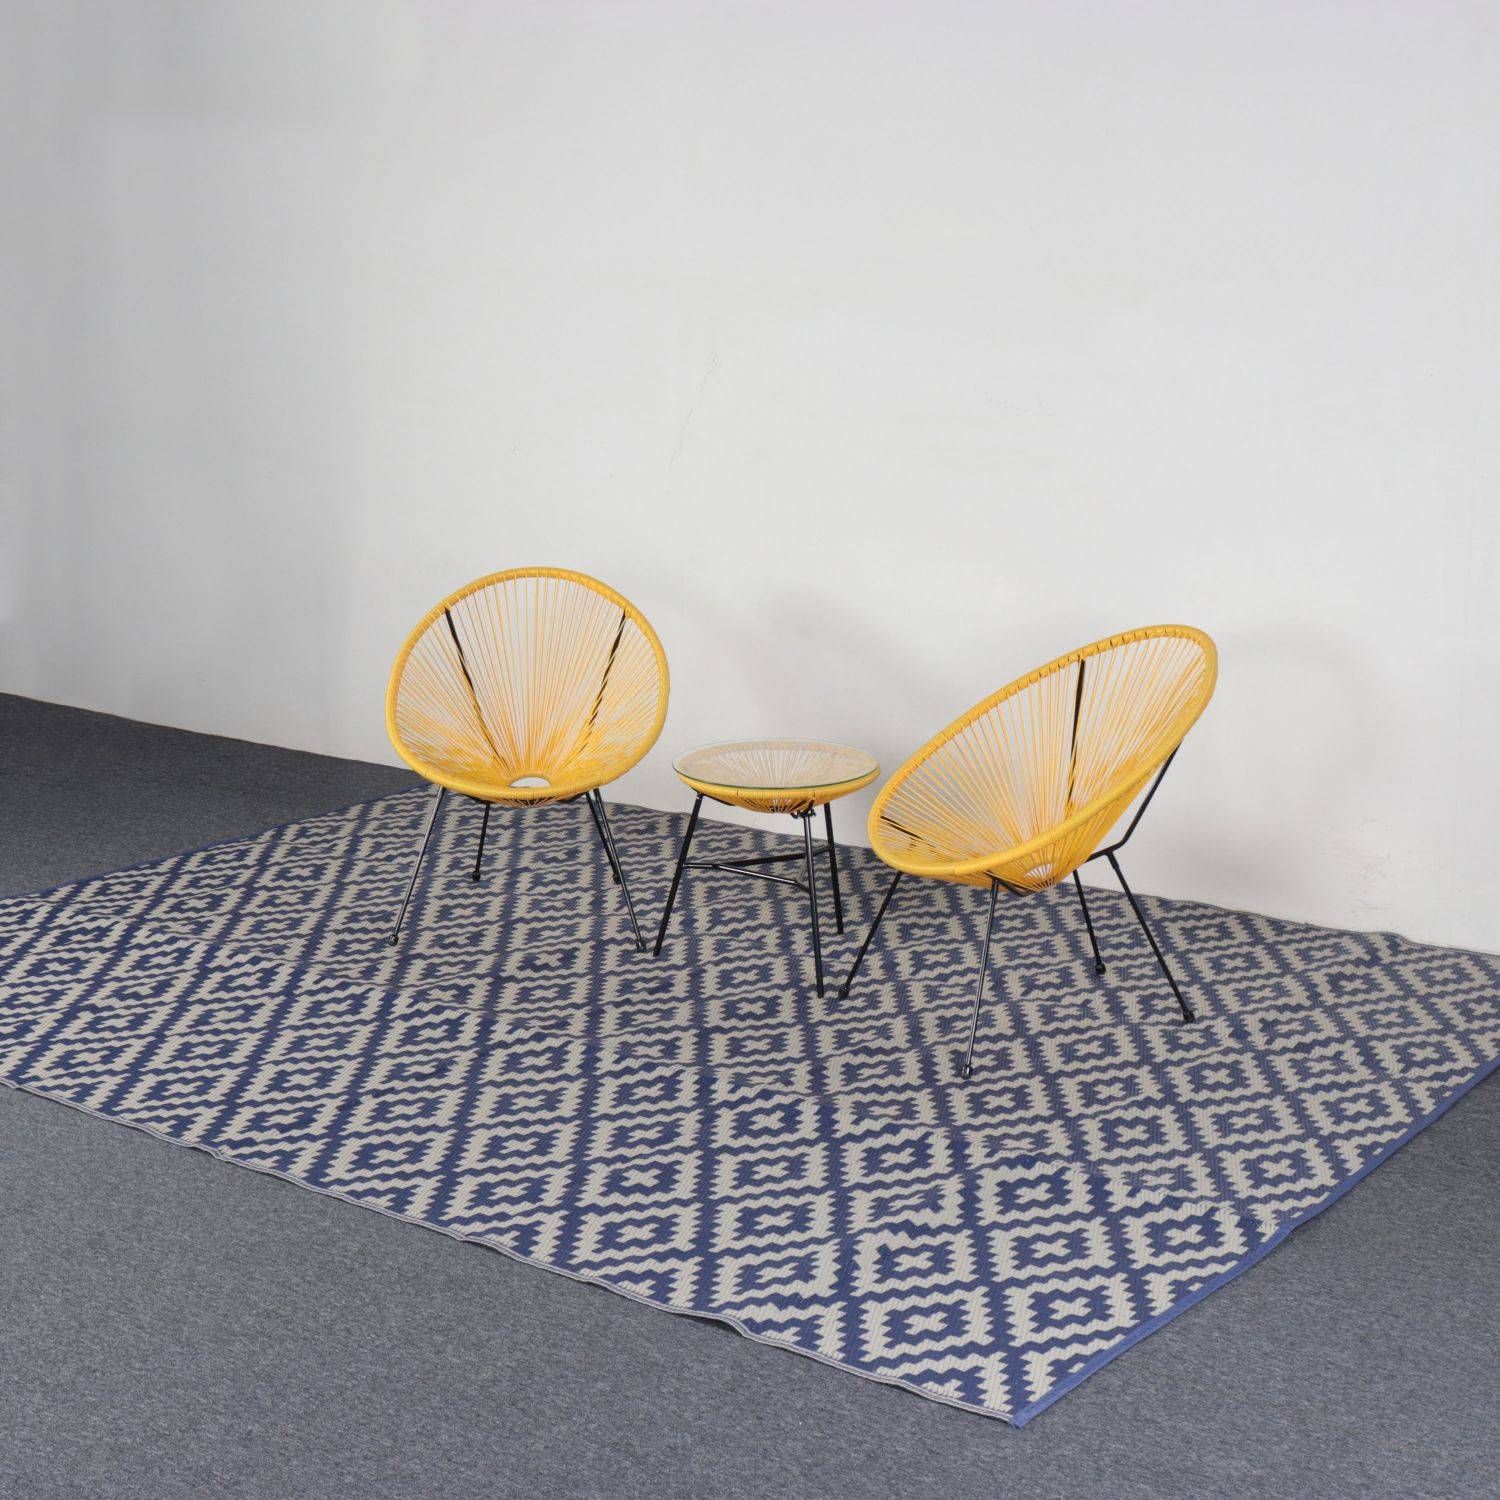 Tapis d’extérieur 270x360cm STOCKHOLM - Rectangulaire, motif losanges bleu / beige, jacquard, réversible, indoor / outdoor,,sweeek,Photo4